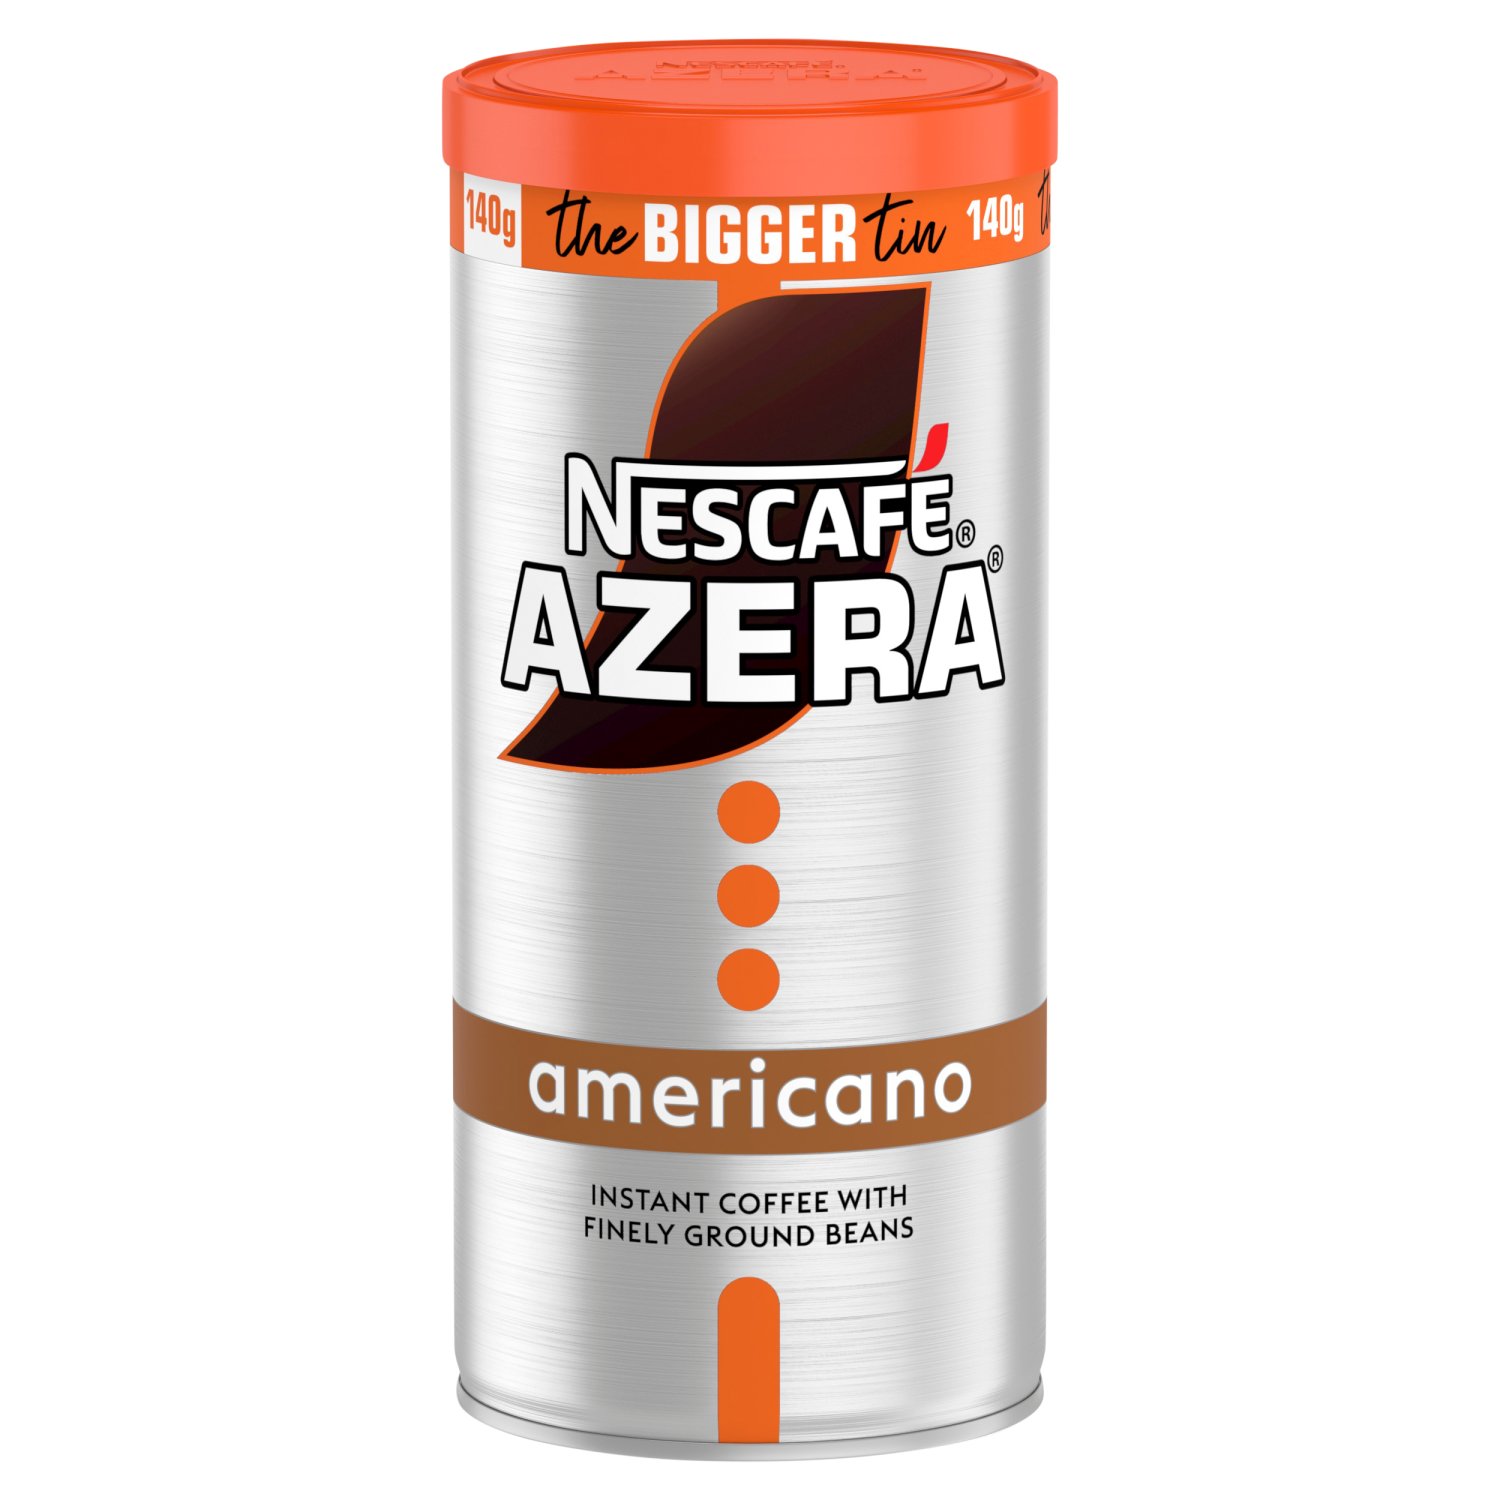 Nescafe Azera Americano (140 g)